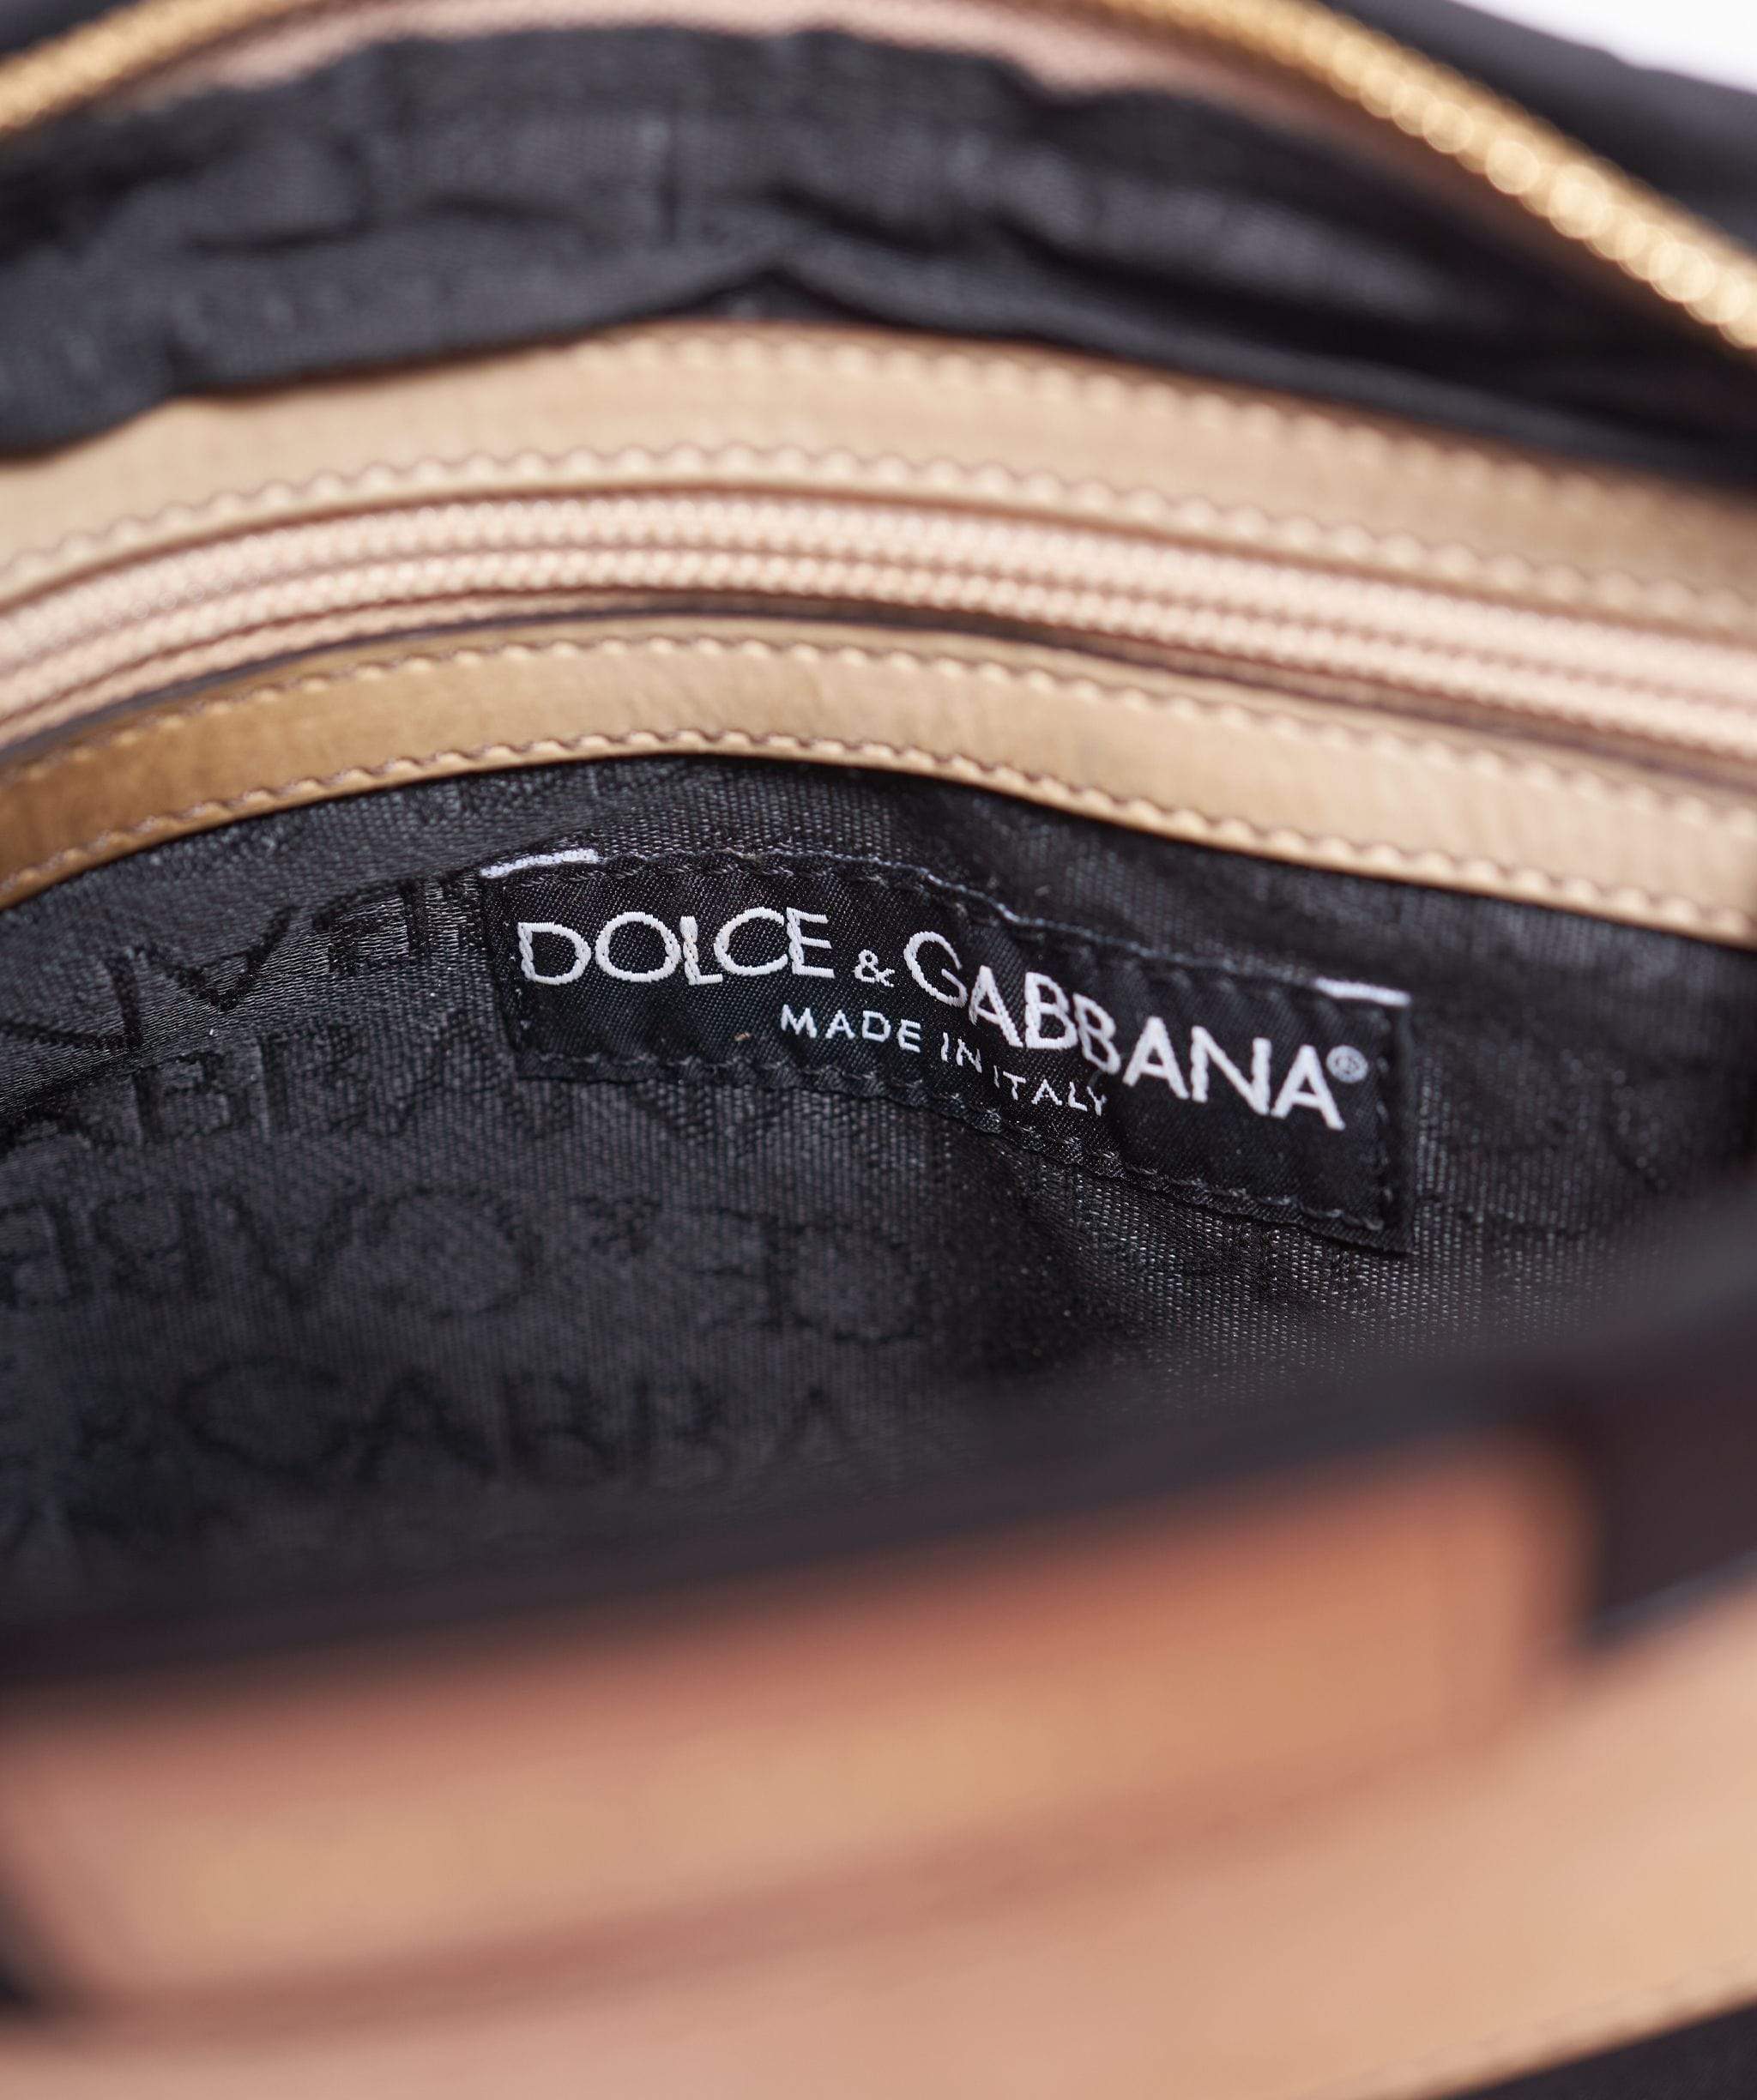 Dolce & Gabbana Dolce and Gabanna cross boody bag